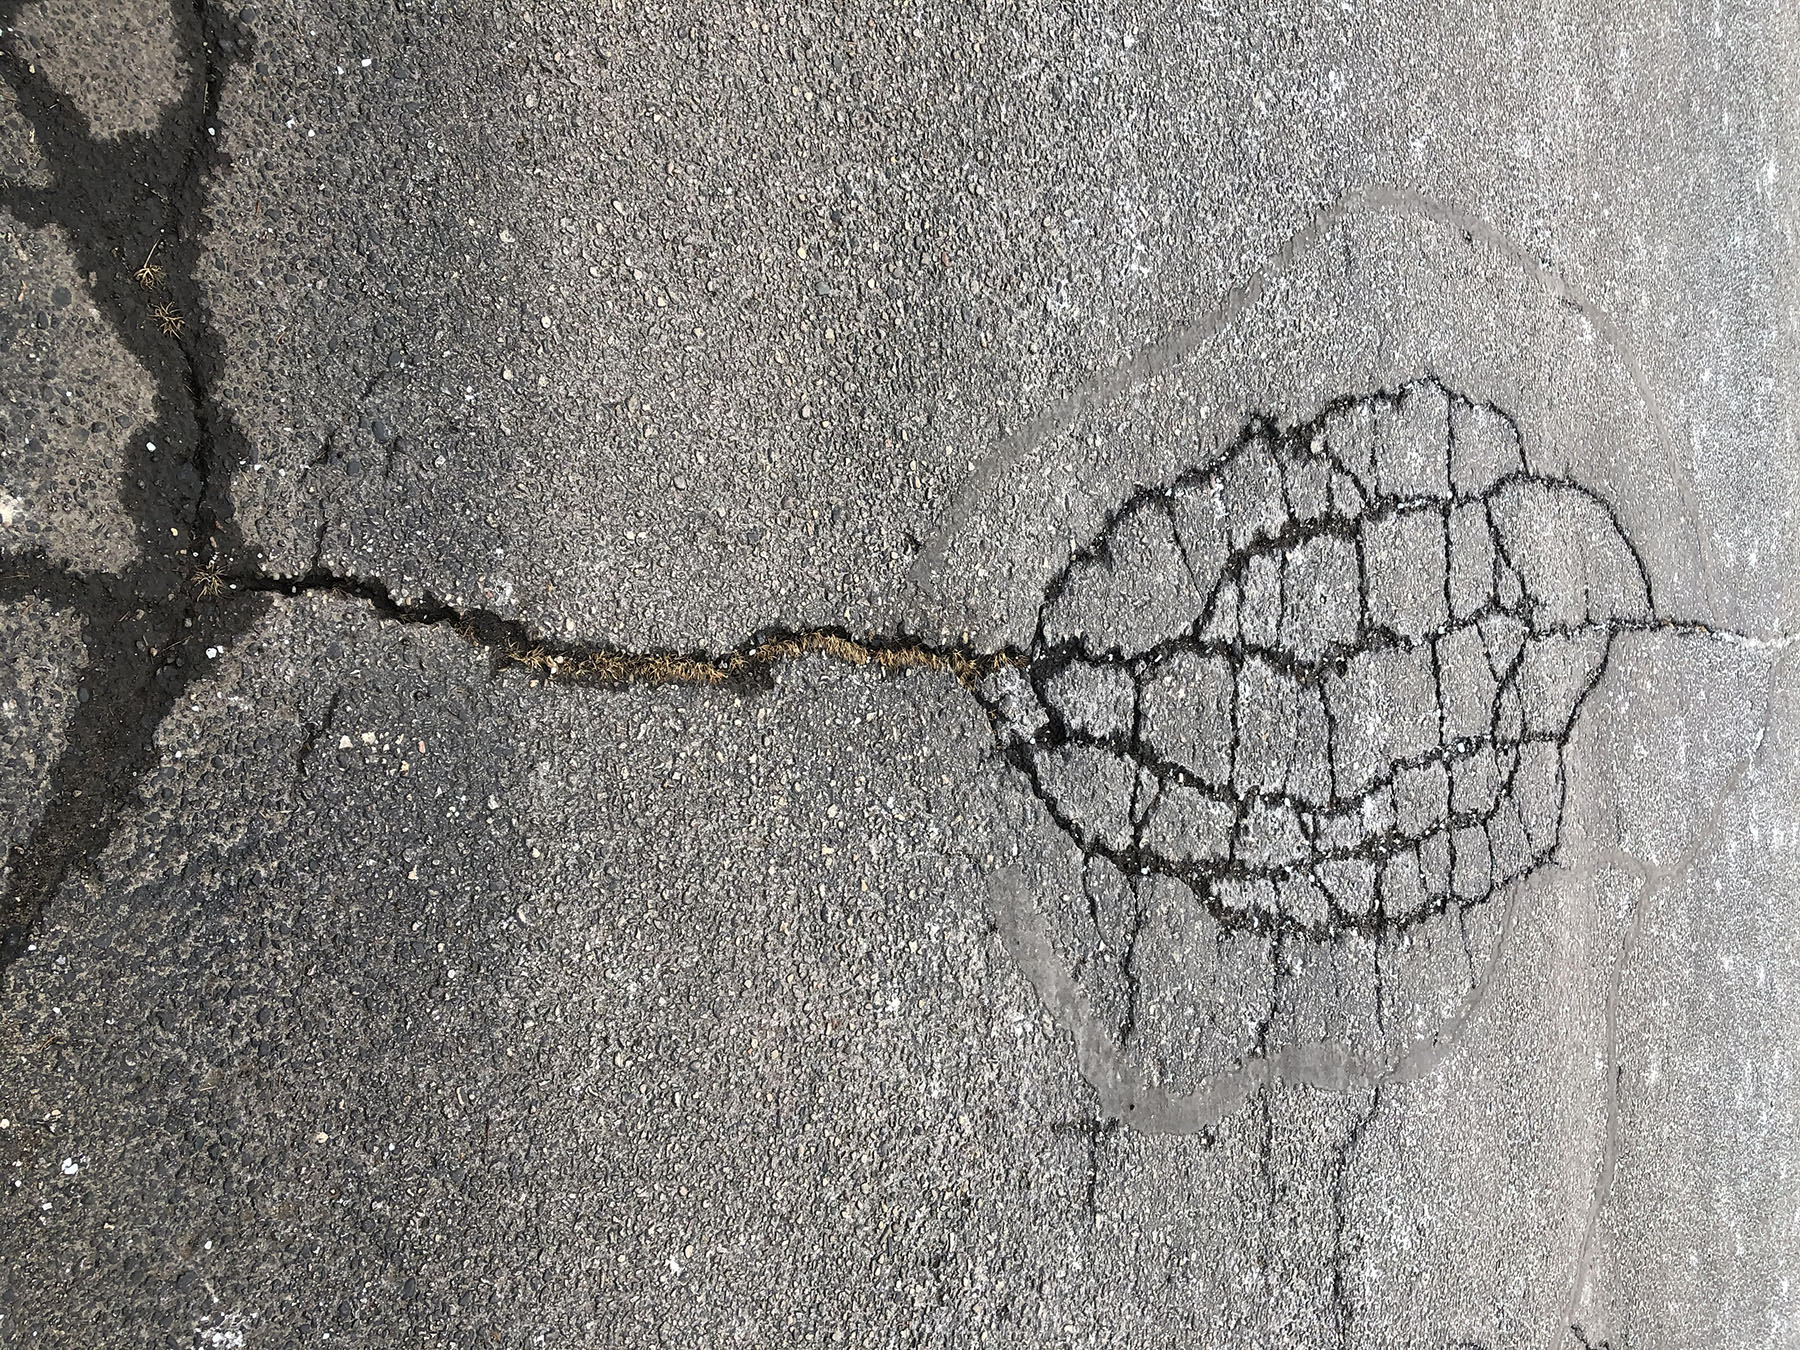 cracks in asphalt creating an oval shape